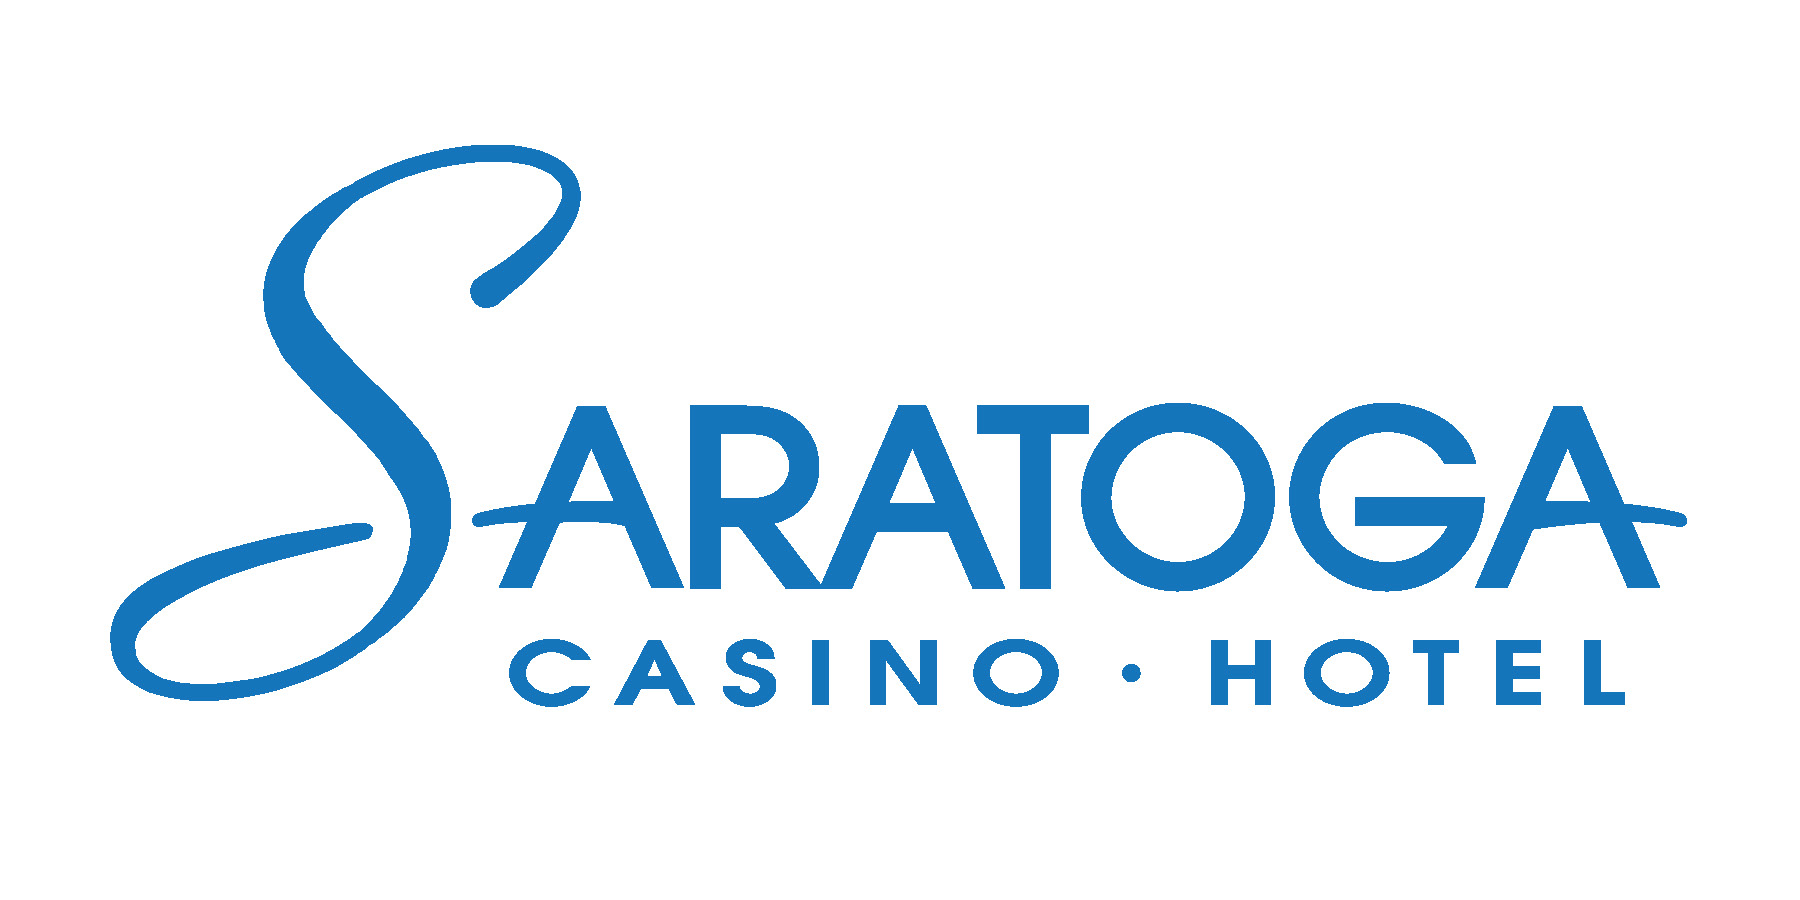 Saratoga Casino - Hotel